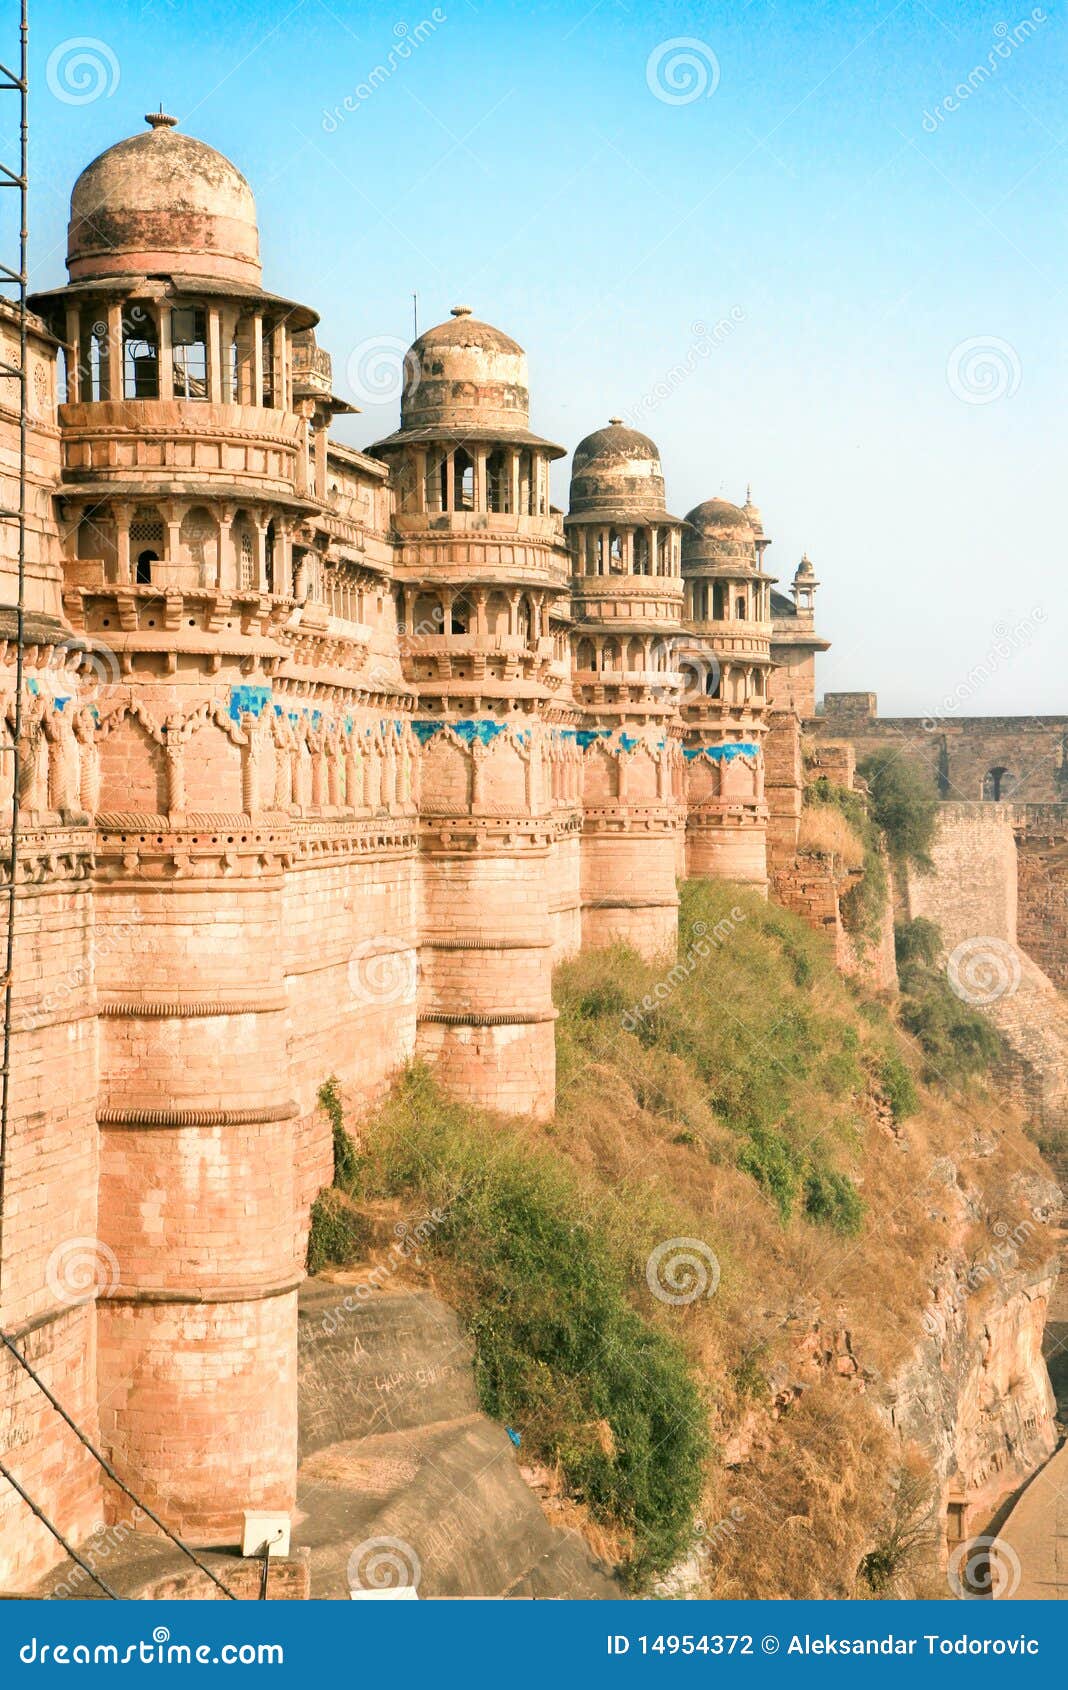 gwalior fort, gwalior, madhya pradesh